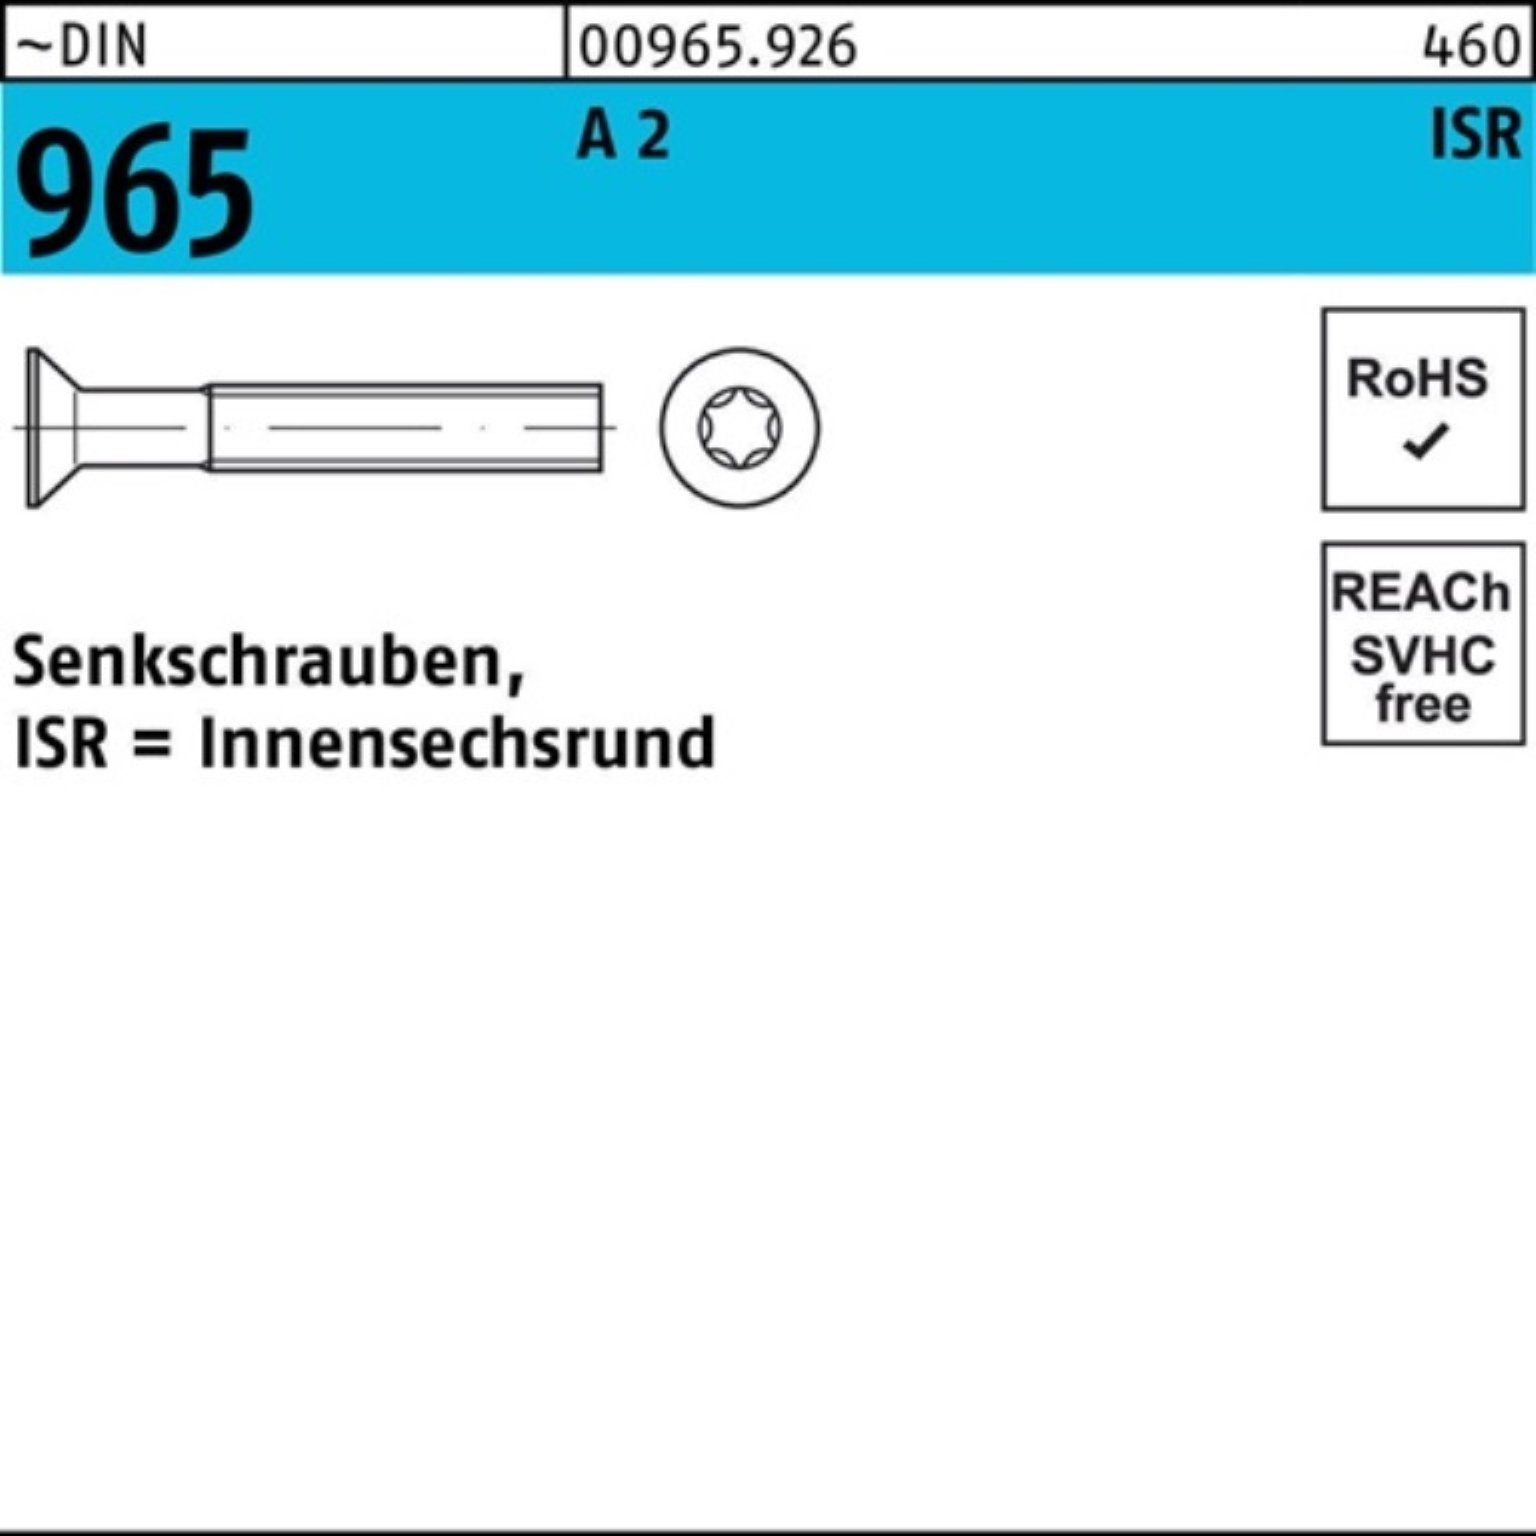 Reyher Senkschraube 2000er Pack Senkschraube 965 DIN 9 3-T8 M2,5x Stück ~DIN 2 2000 ISR A